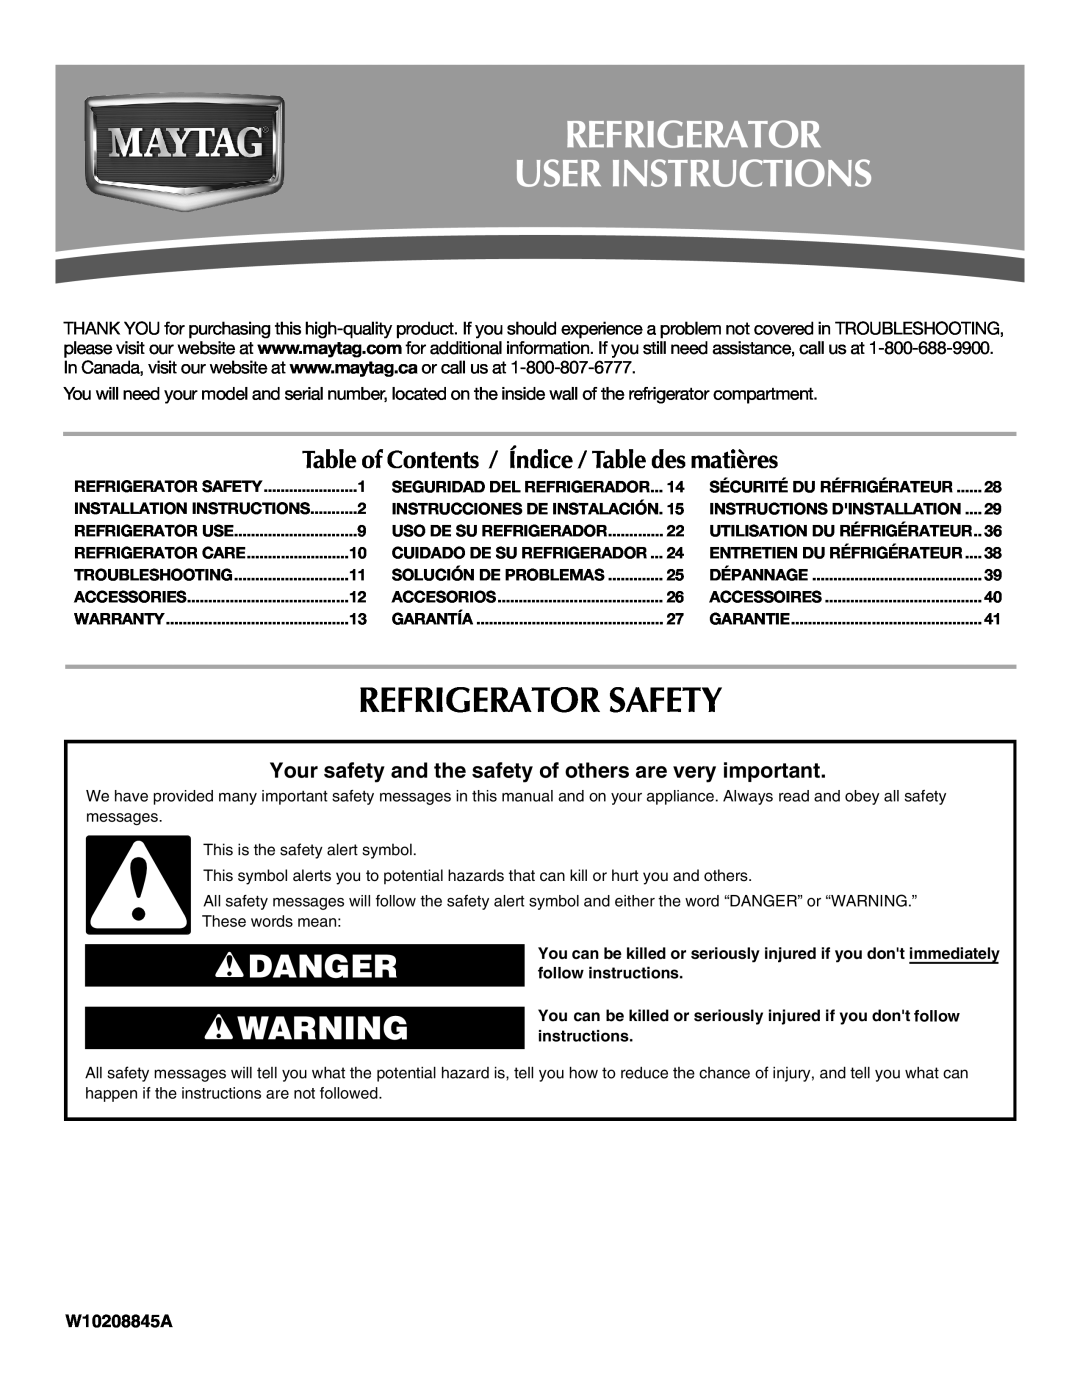 Maytag MTB2254EEW installation instructions Refrigerator User Instructions, Refrigerator Safety, Danger, W10208845A 